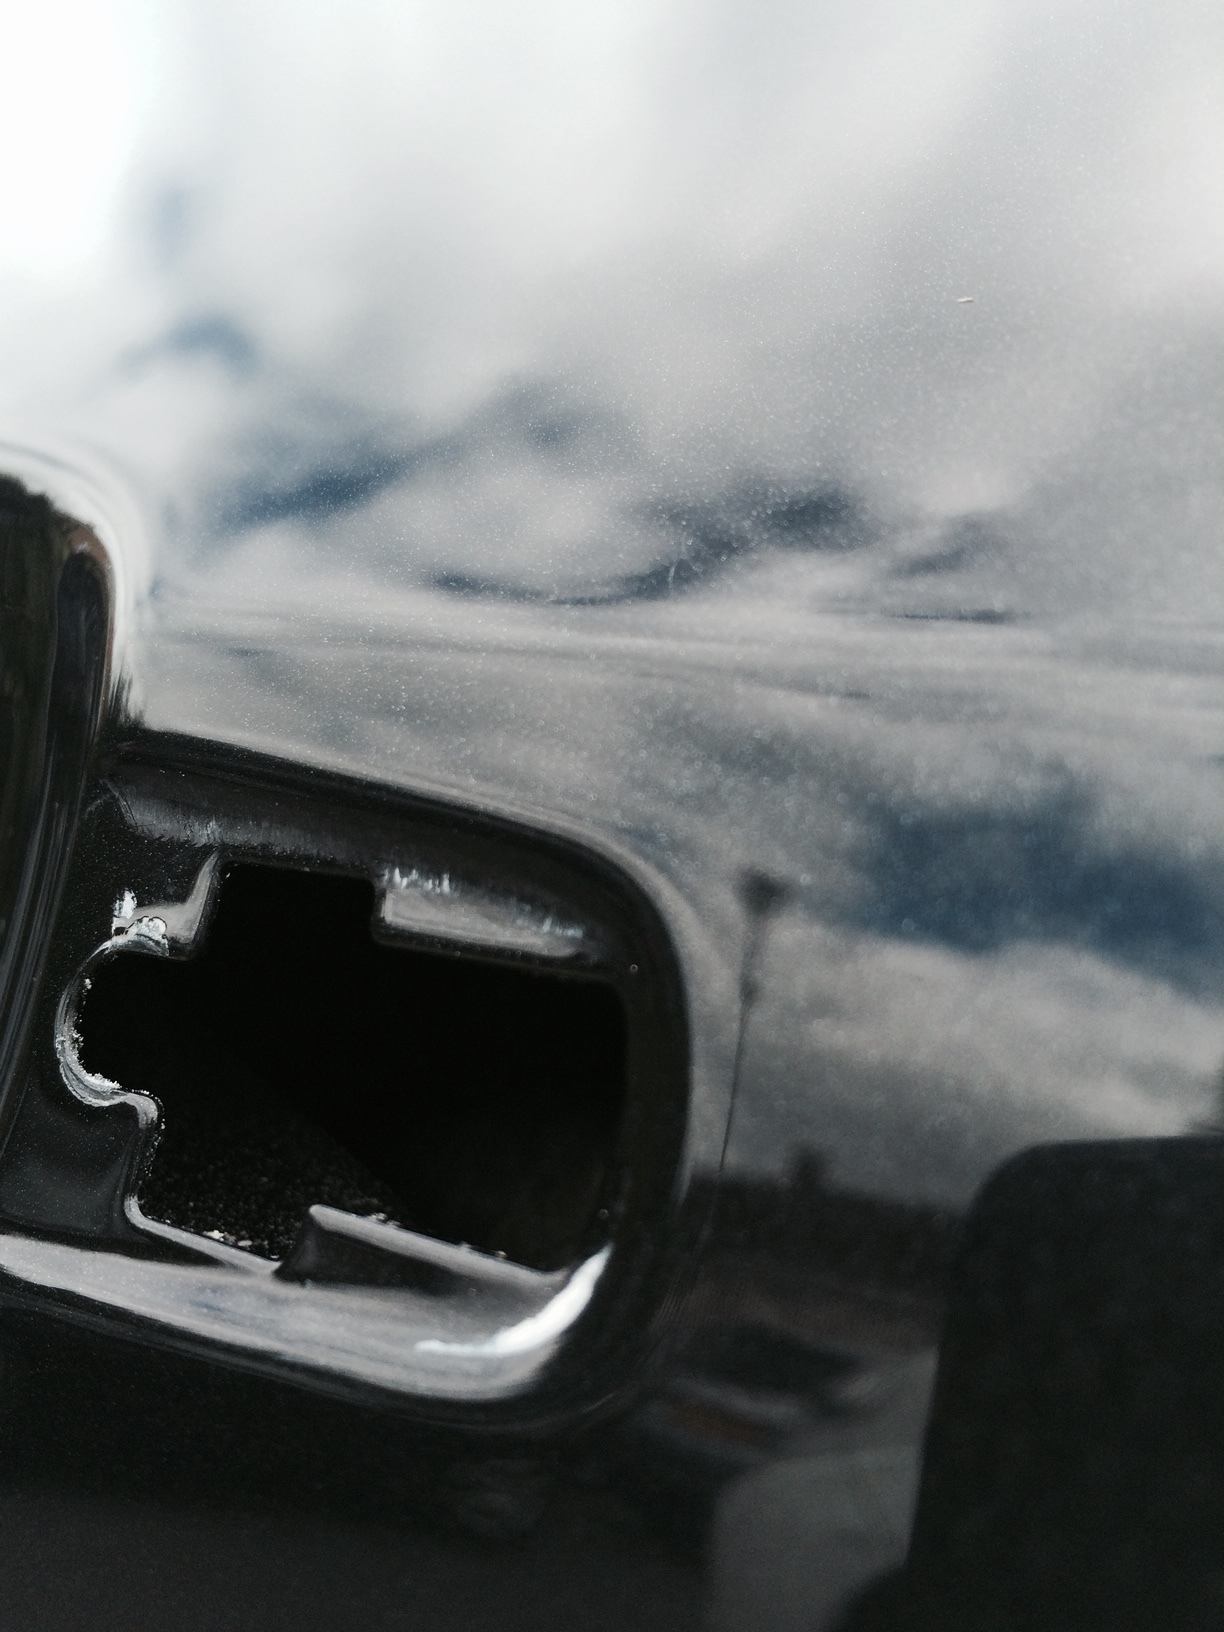 Paintless car body dent repair